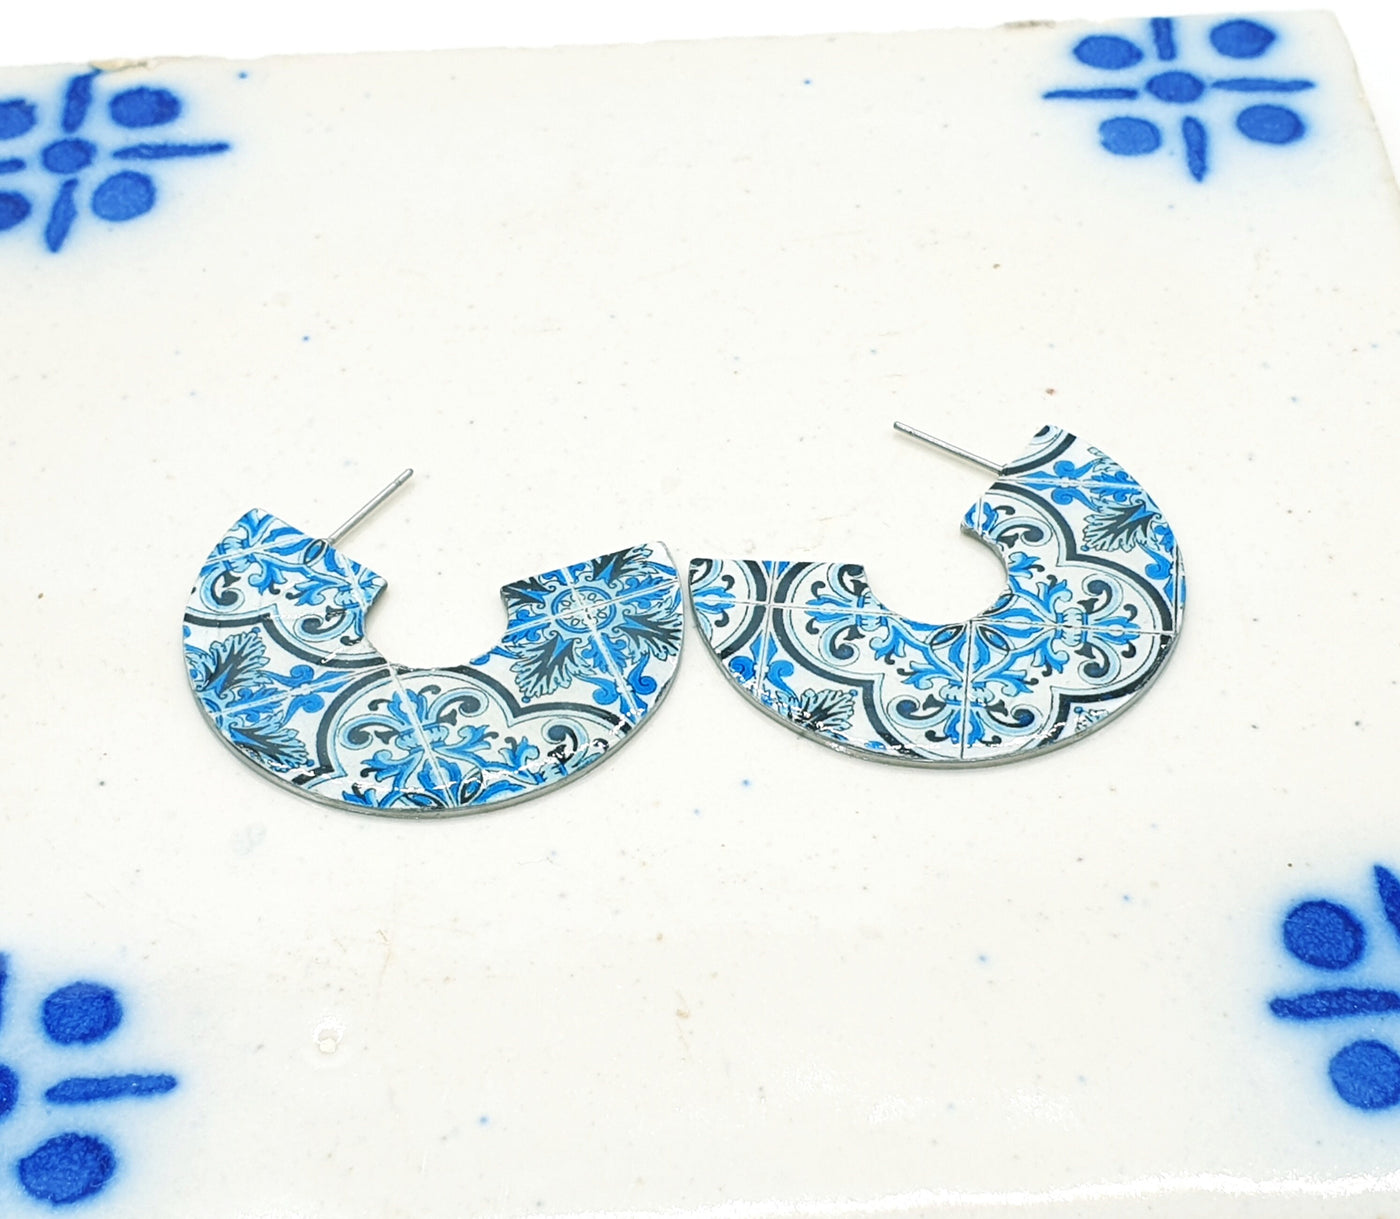 ELISA - Large Hoop Blue Tile Earrings